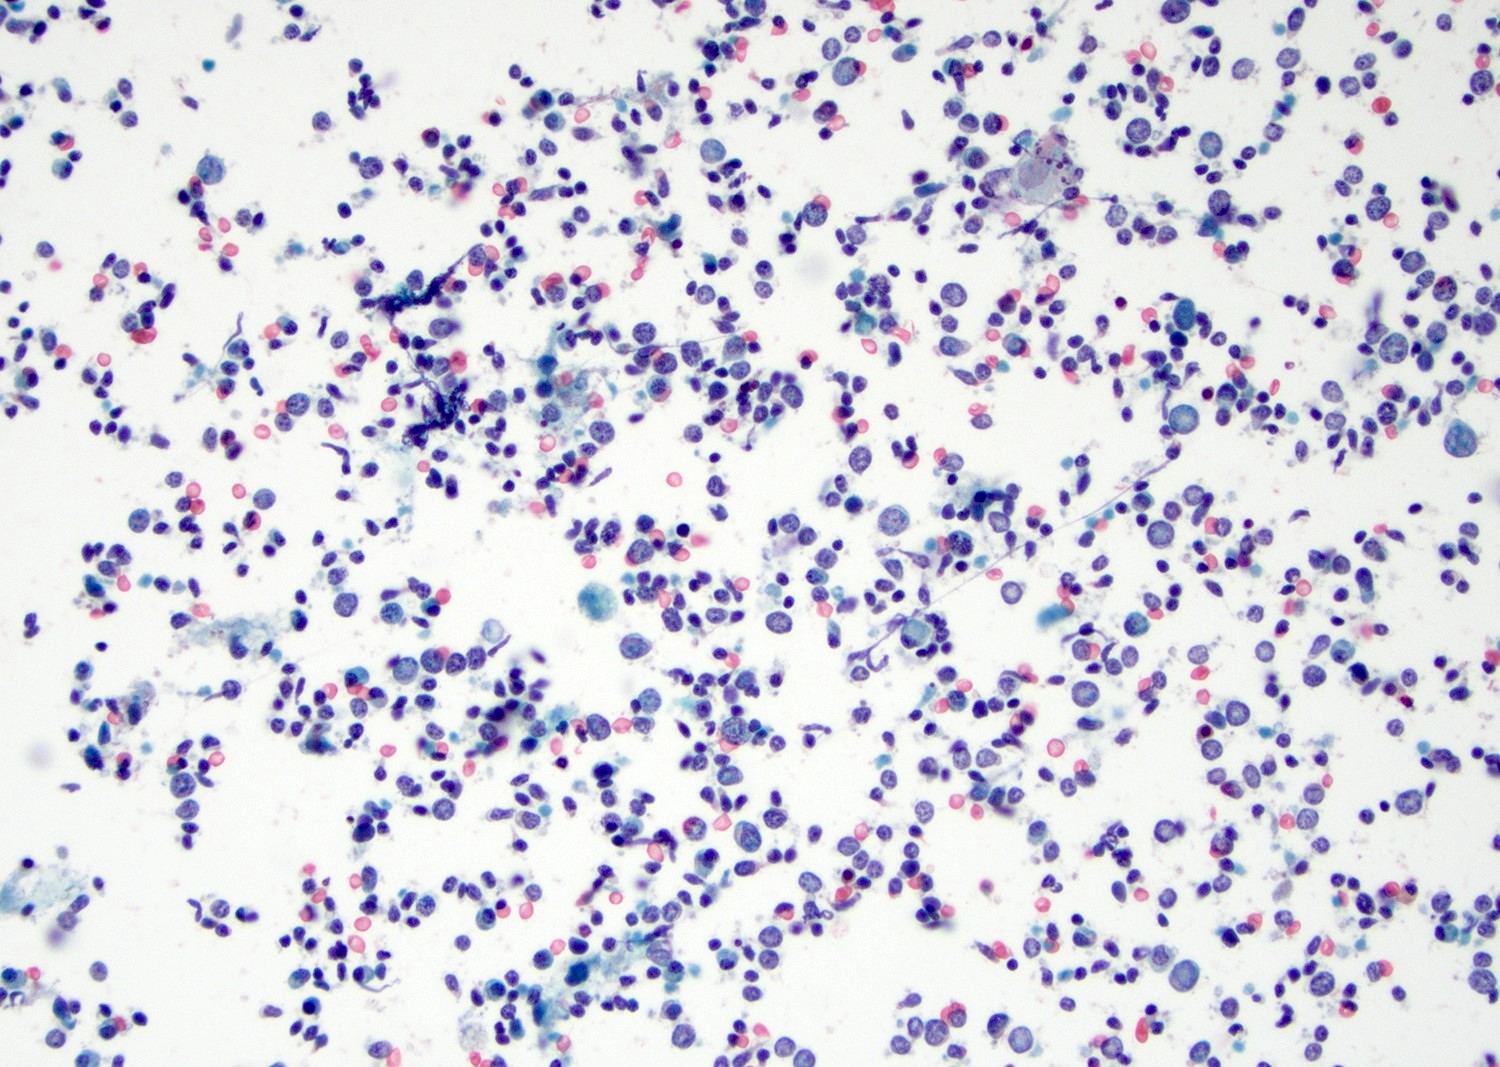 Polymorphous lymphocytes